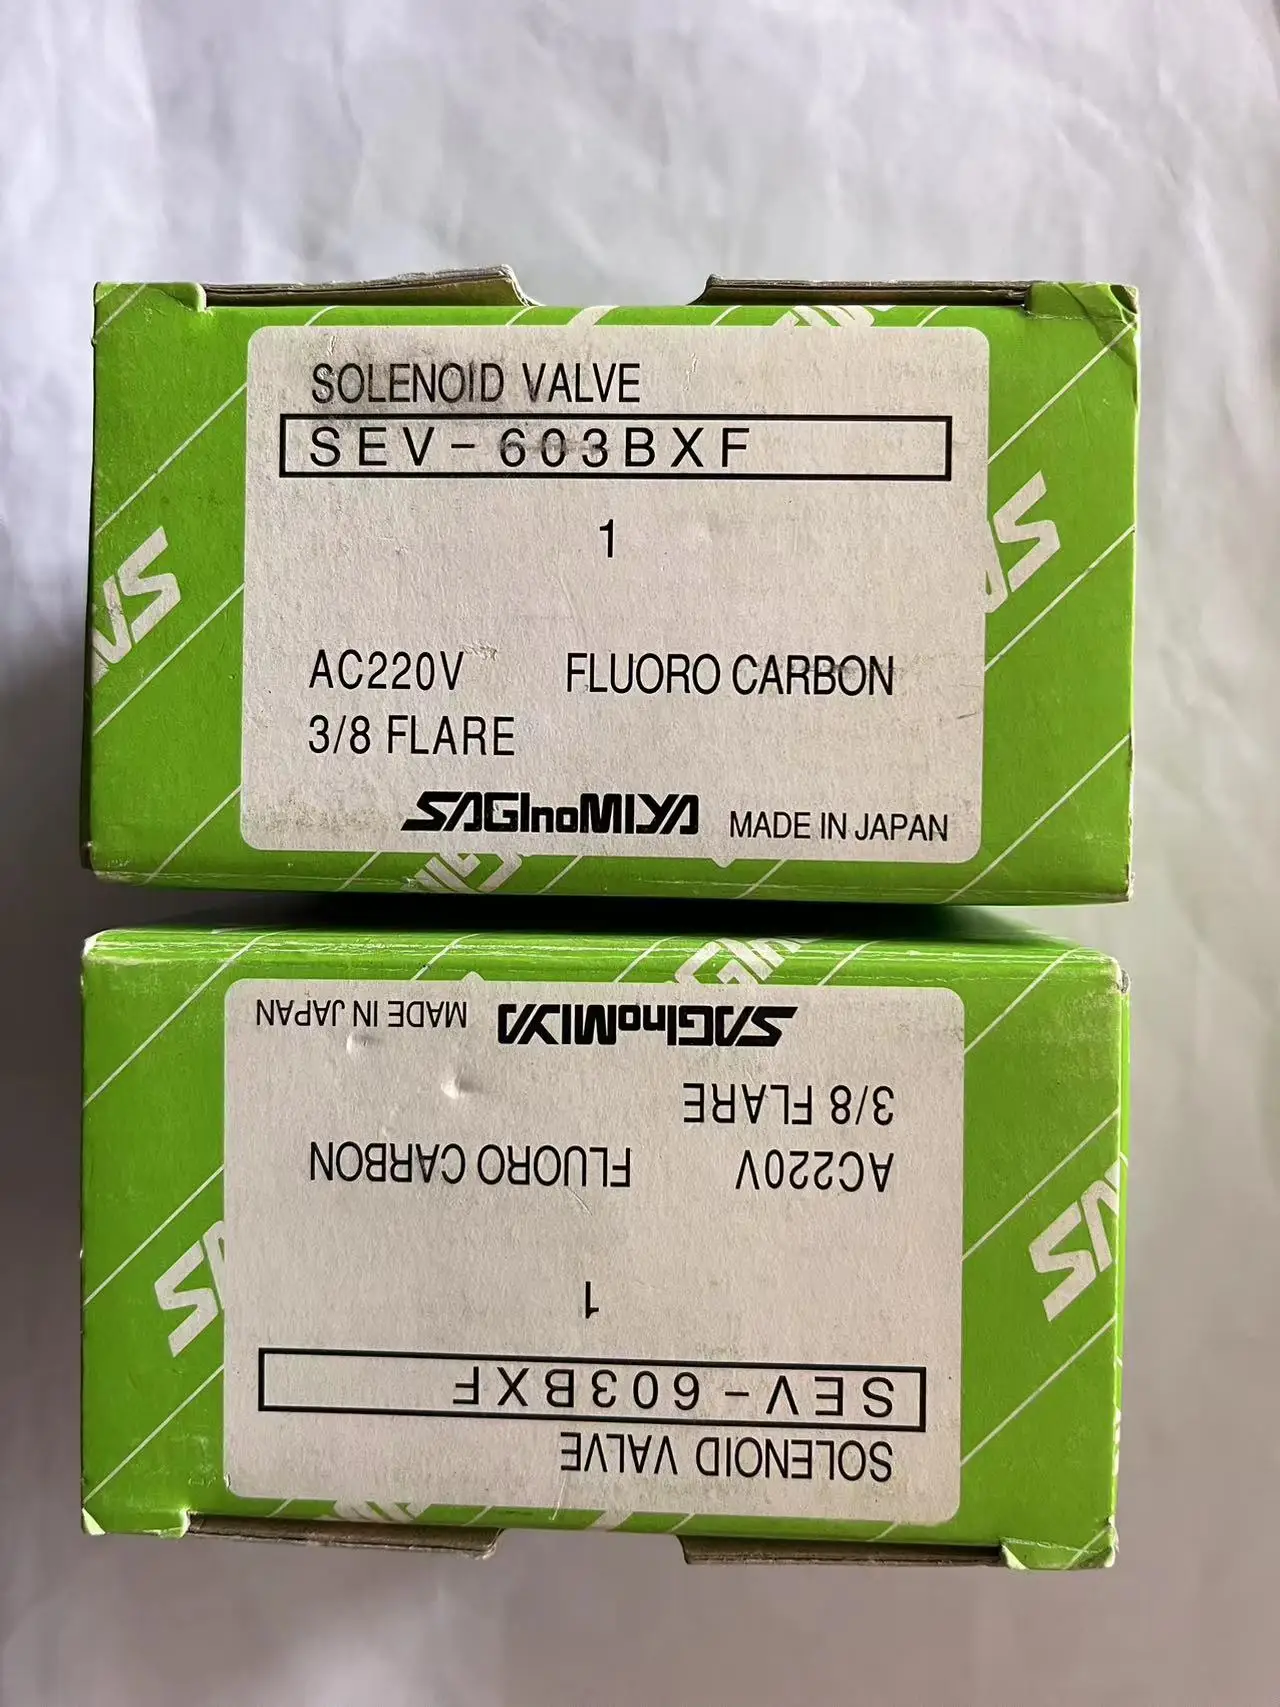 saginomiyyaソレノイドバルブ、付属品、sev-603bxf、ac220v、新しい